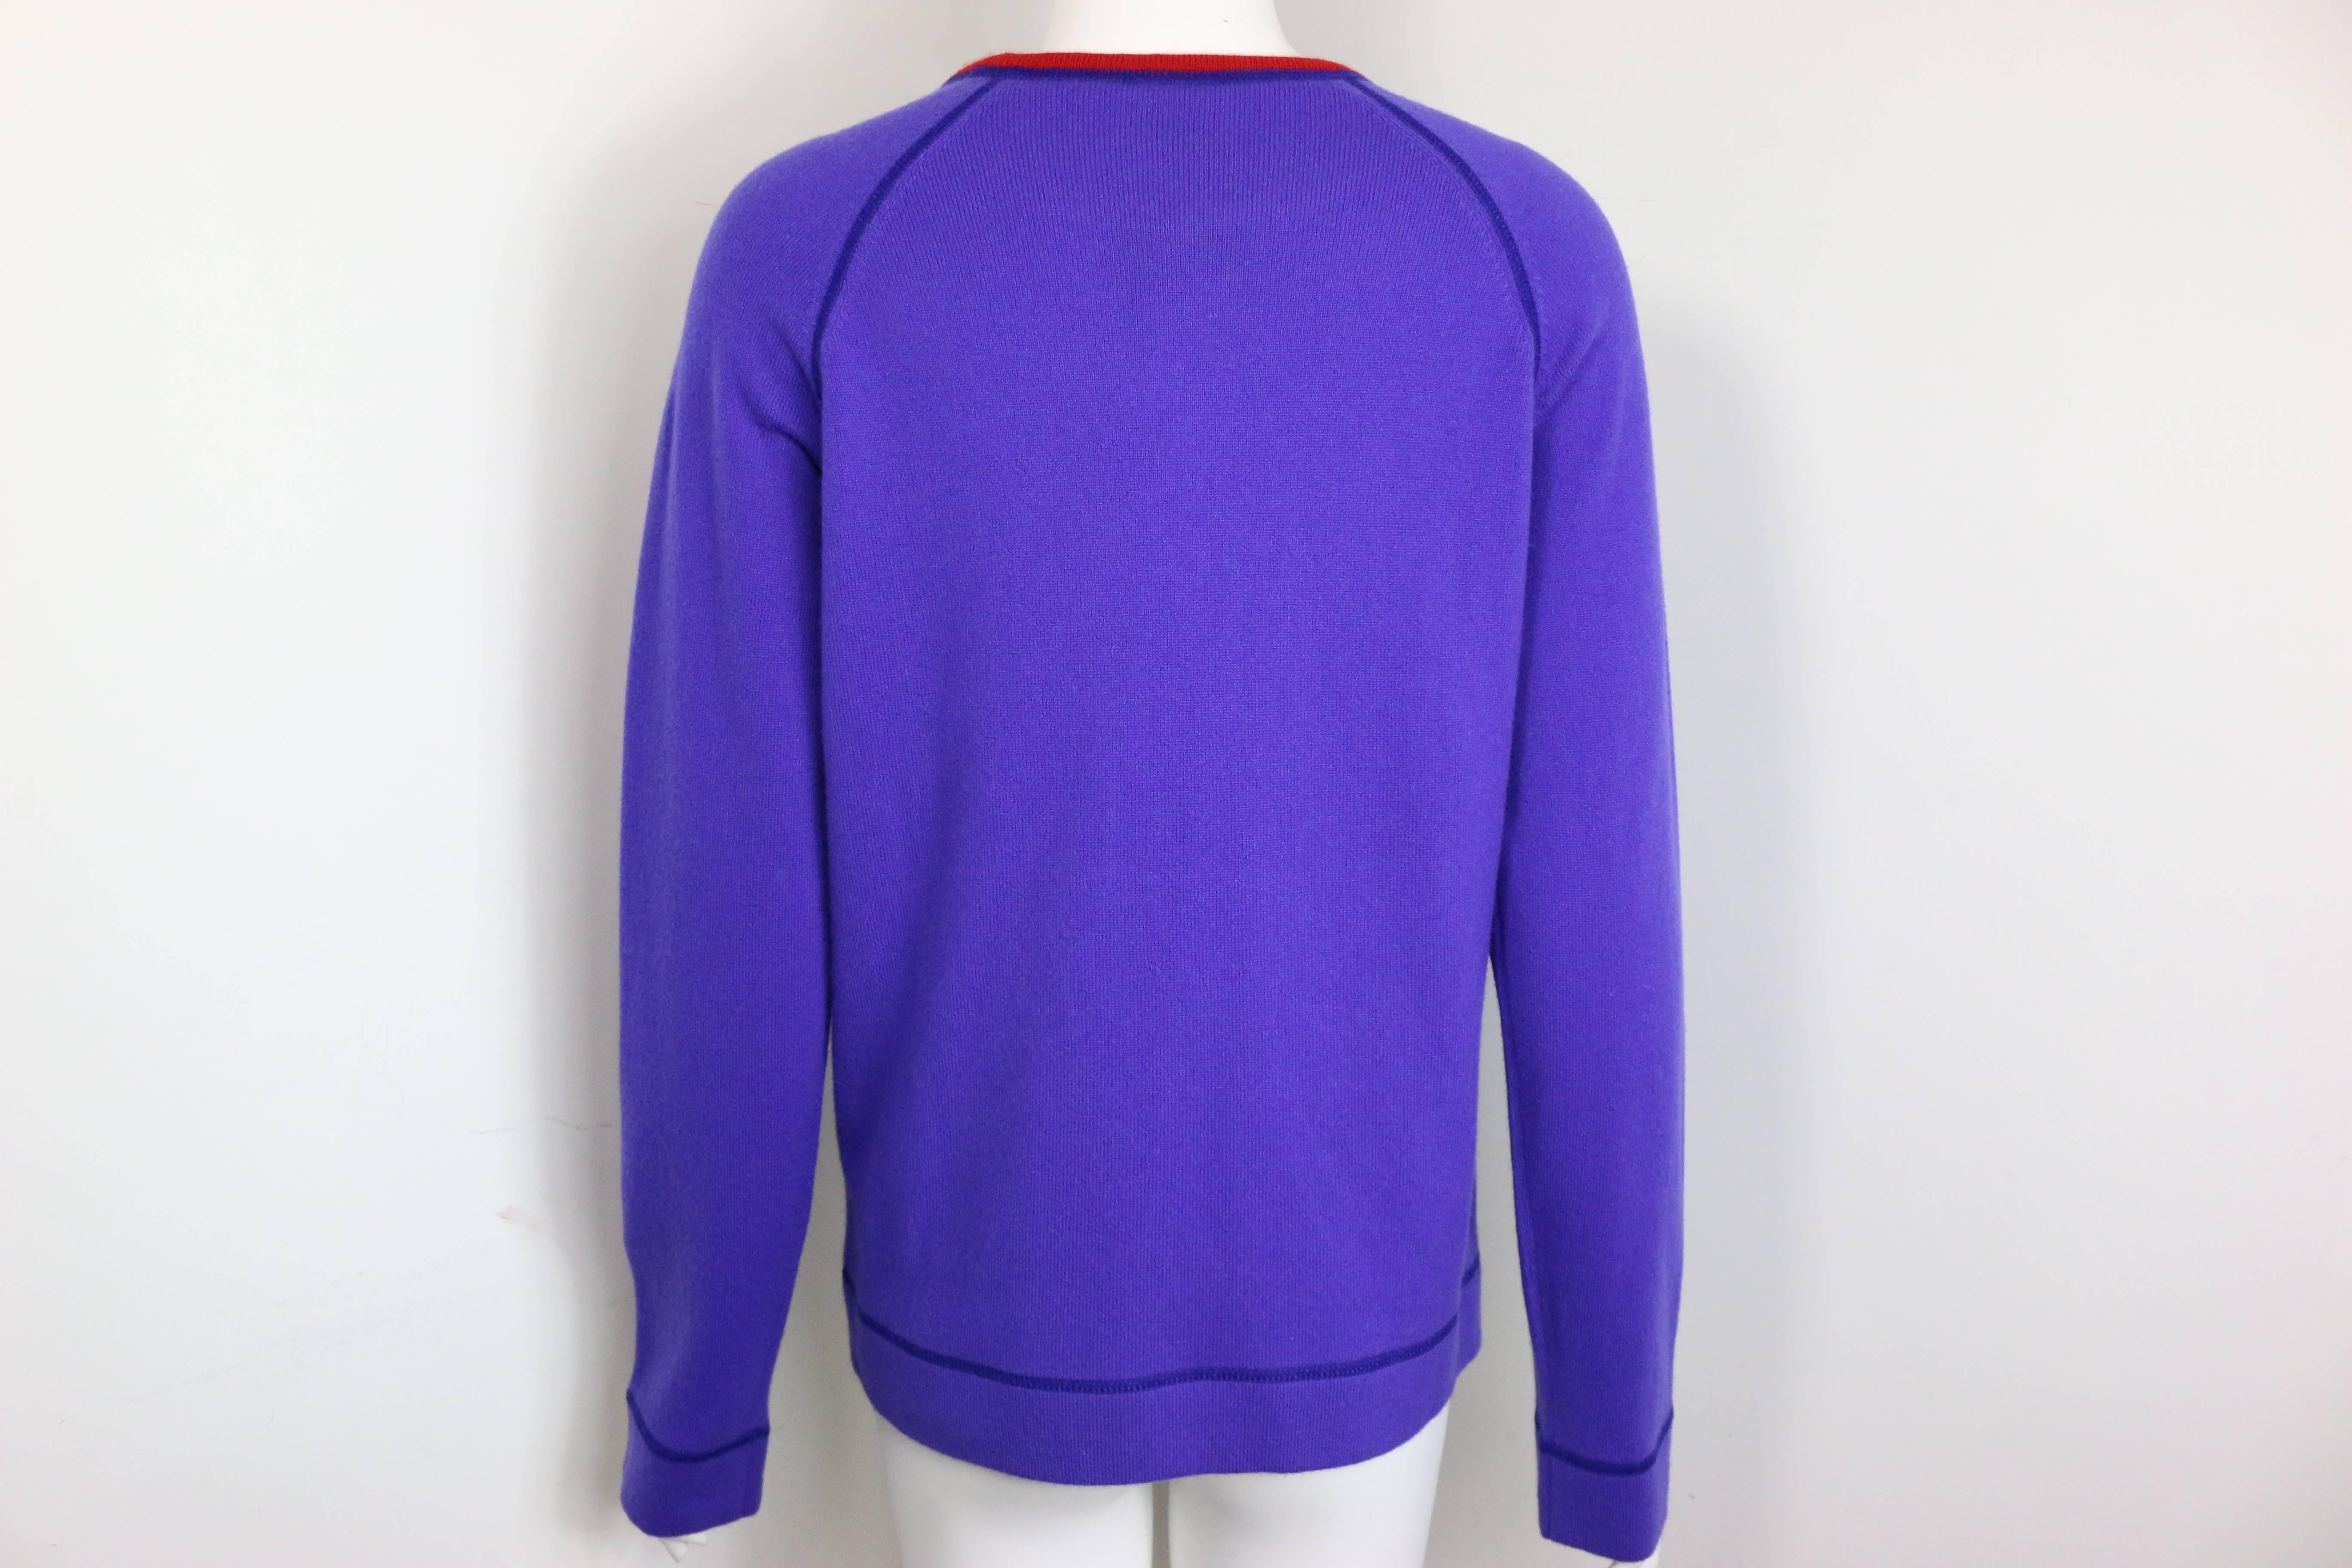 - Pull-over en cachemire violet à col bordé de rouge de la collection 2008 de Chanel. 

- Il comporte deux poches latérales, des manches rondes et le logo 